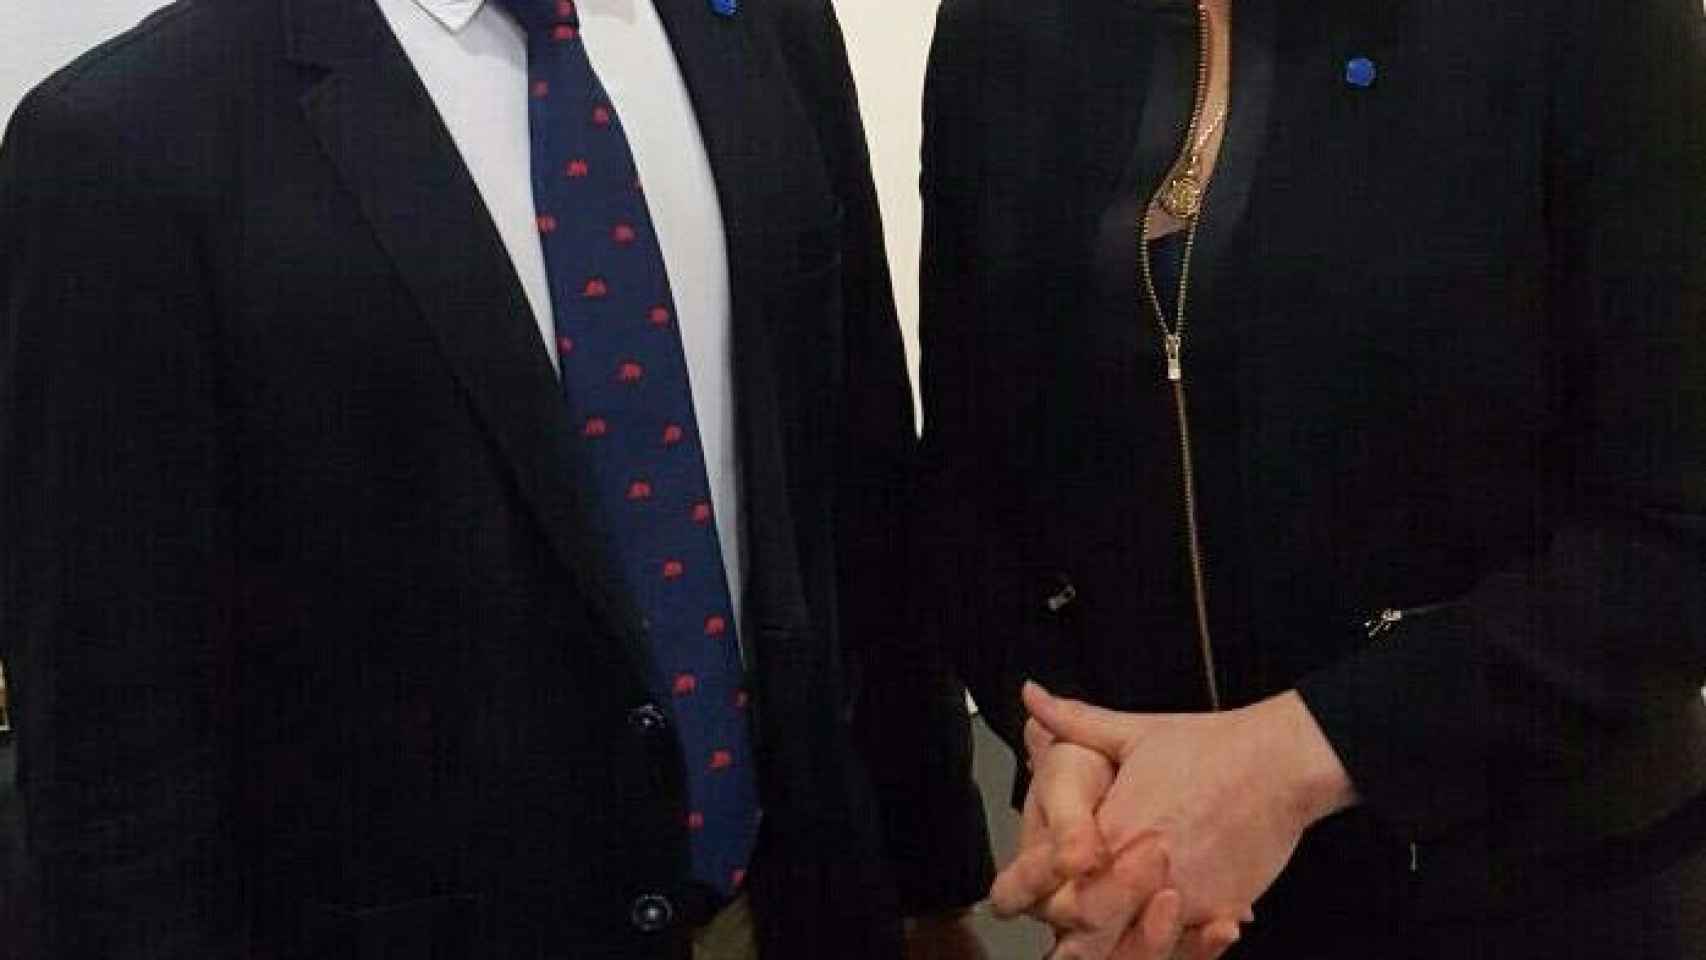 Santiago Abascal y Marine Le Pen en un acto de campaña en las pasadas elecciones francesas en Perpiñán.